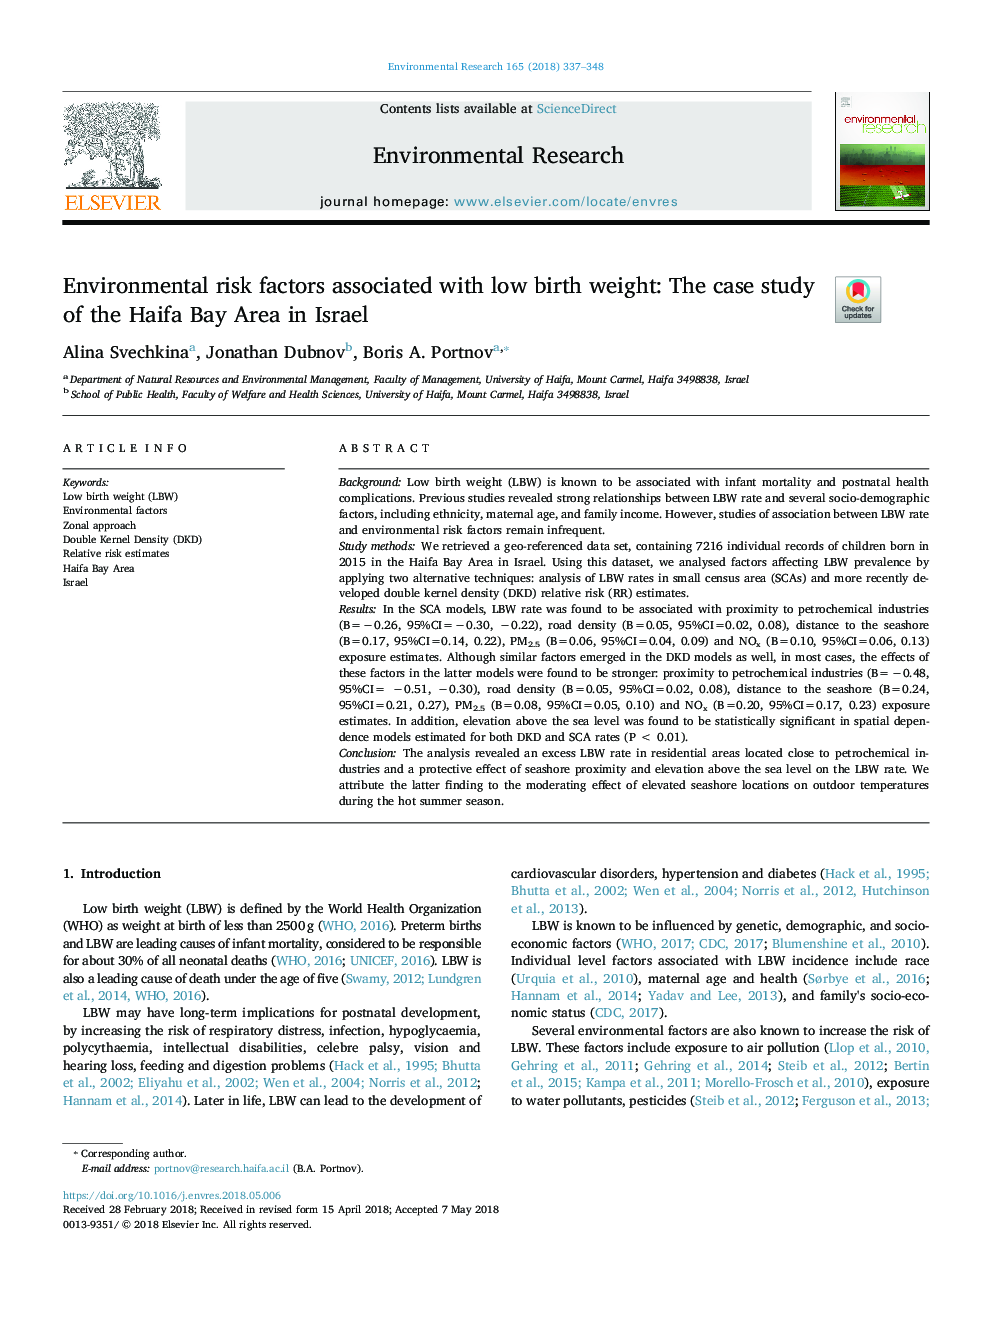 عوامل خطر زیست محیطی همراه با وزن کم هنگام تولد: مطالعه موردی منطقه خلیج حیفا در اسرائیل 